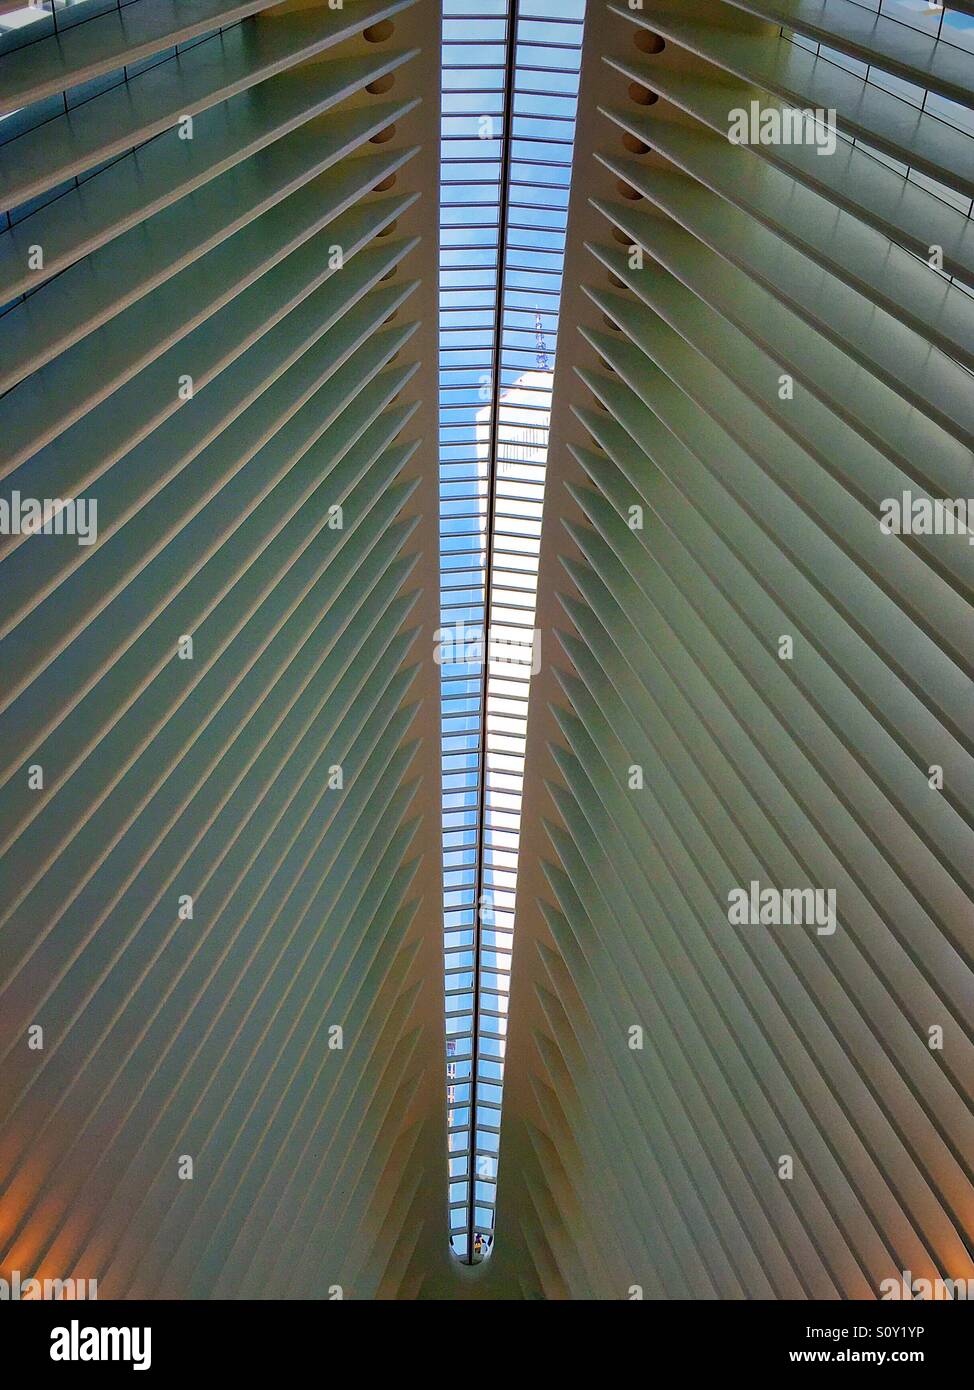 L'occhio al World Trade Center hub di trasporto è costituita da acciaio bianco nervature e la Freedom Tower è visibile attraverso il tetto, New York City, Stati Uniti d'America Foto Stock